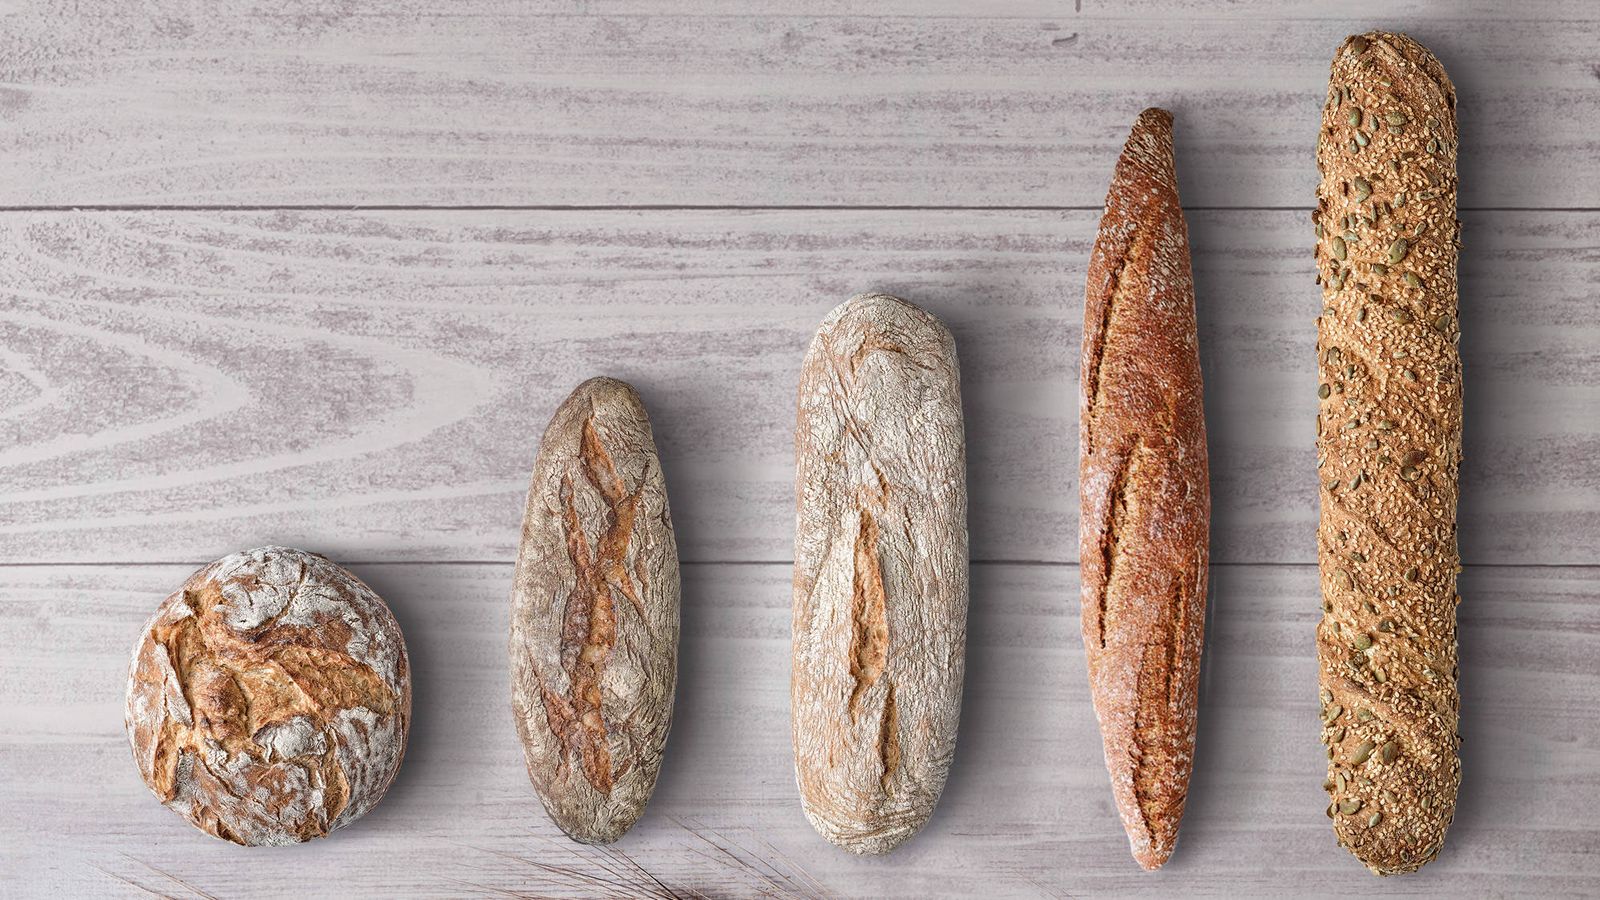 Los "panes con alma" de Santagloria: artesanos, rústicos y nutritivos